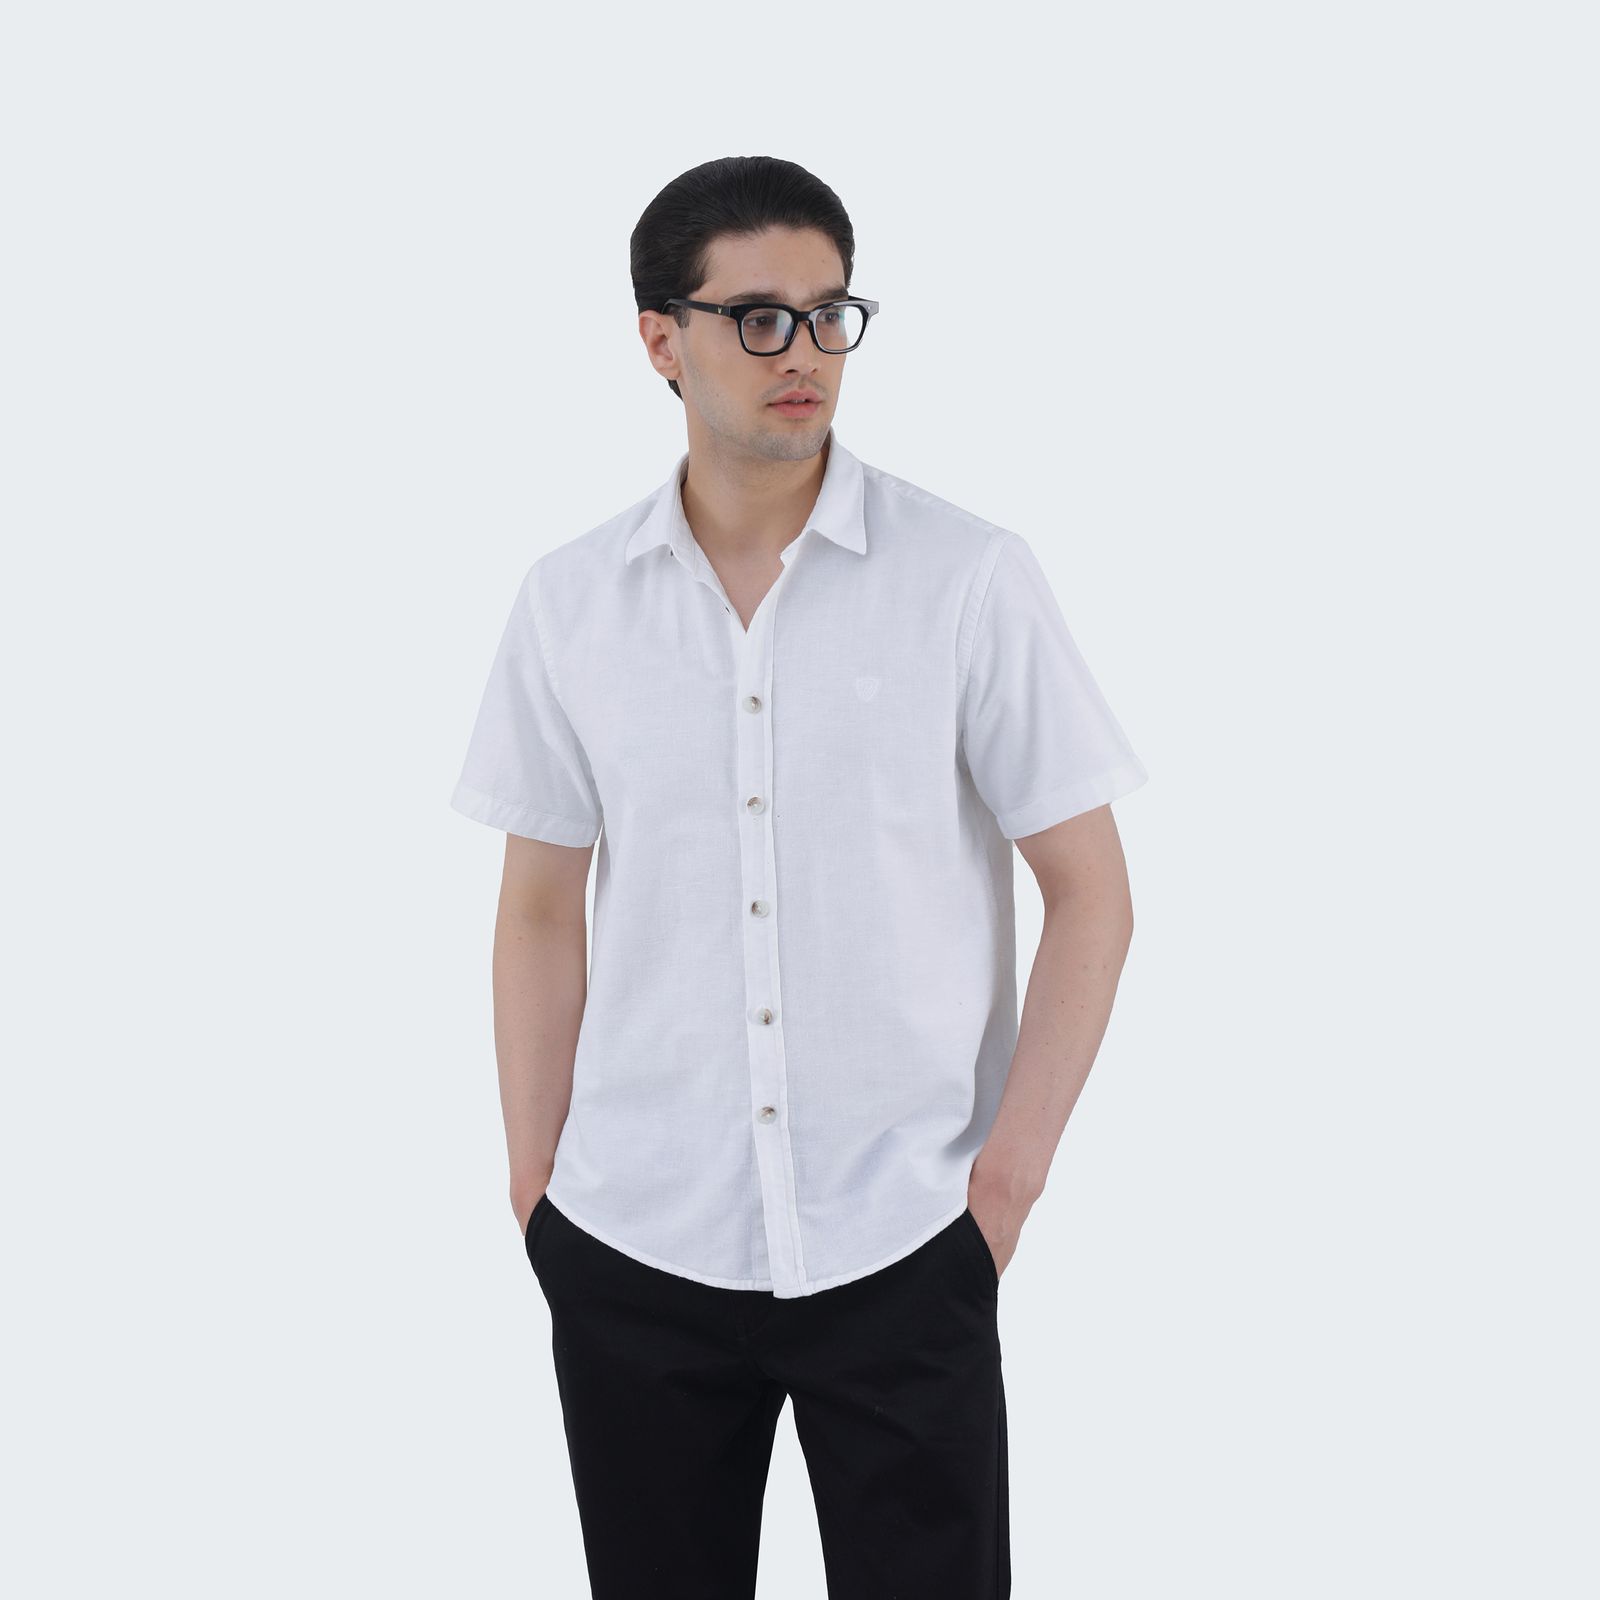 پیراهن آستین کوتاه مردانه پاتن جامه مدل 121221020267000 رنگ سفید -  - 1